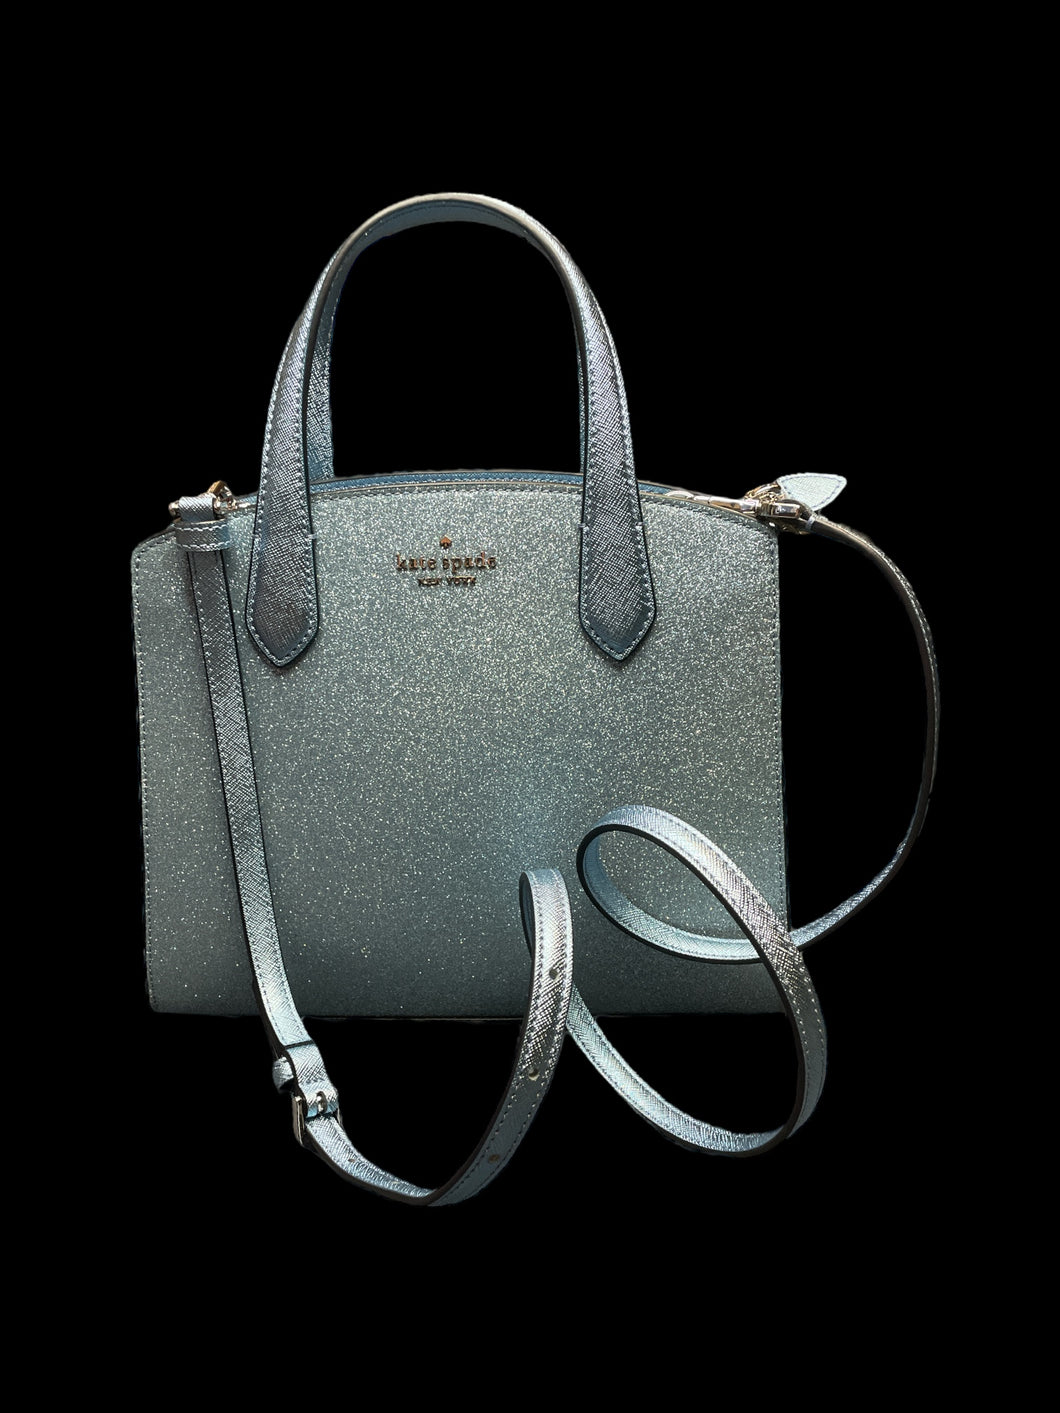 Aqua & metallic silver Kate Spade crossbody bag w/ top handles, adjustable removable strap, original tag, & zipper closure